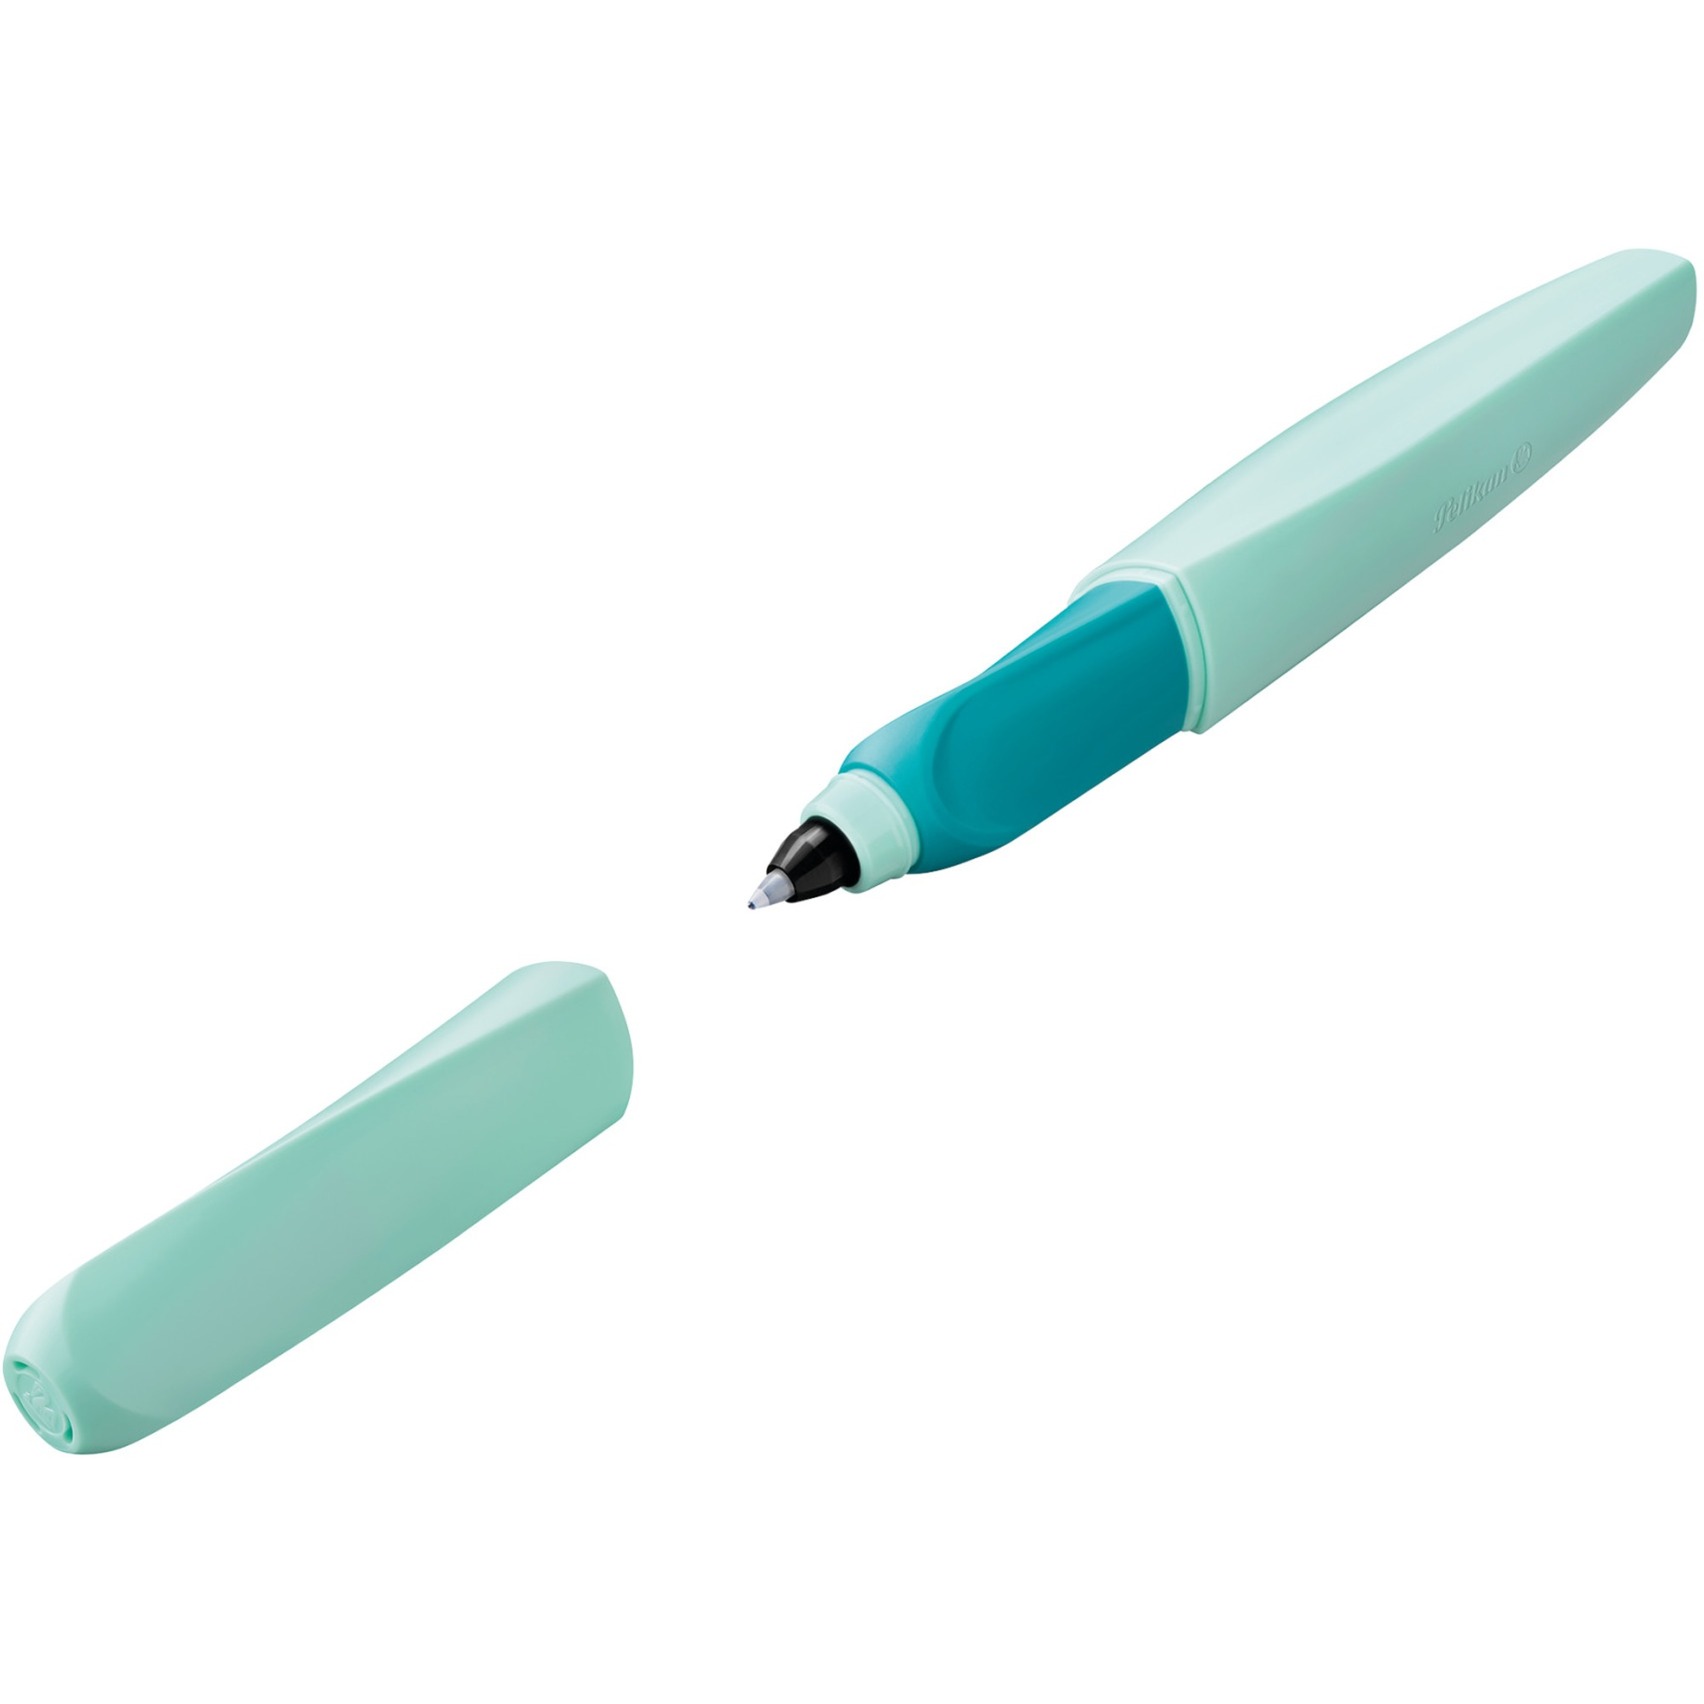 Image of Alternate - Tintenroller Twist Neo Mint, Stift online einkaufen bei Alternate